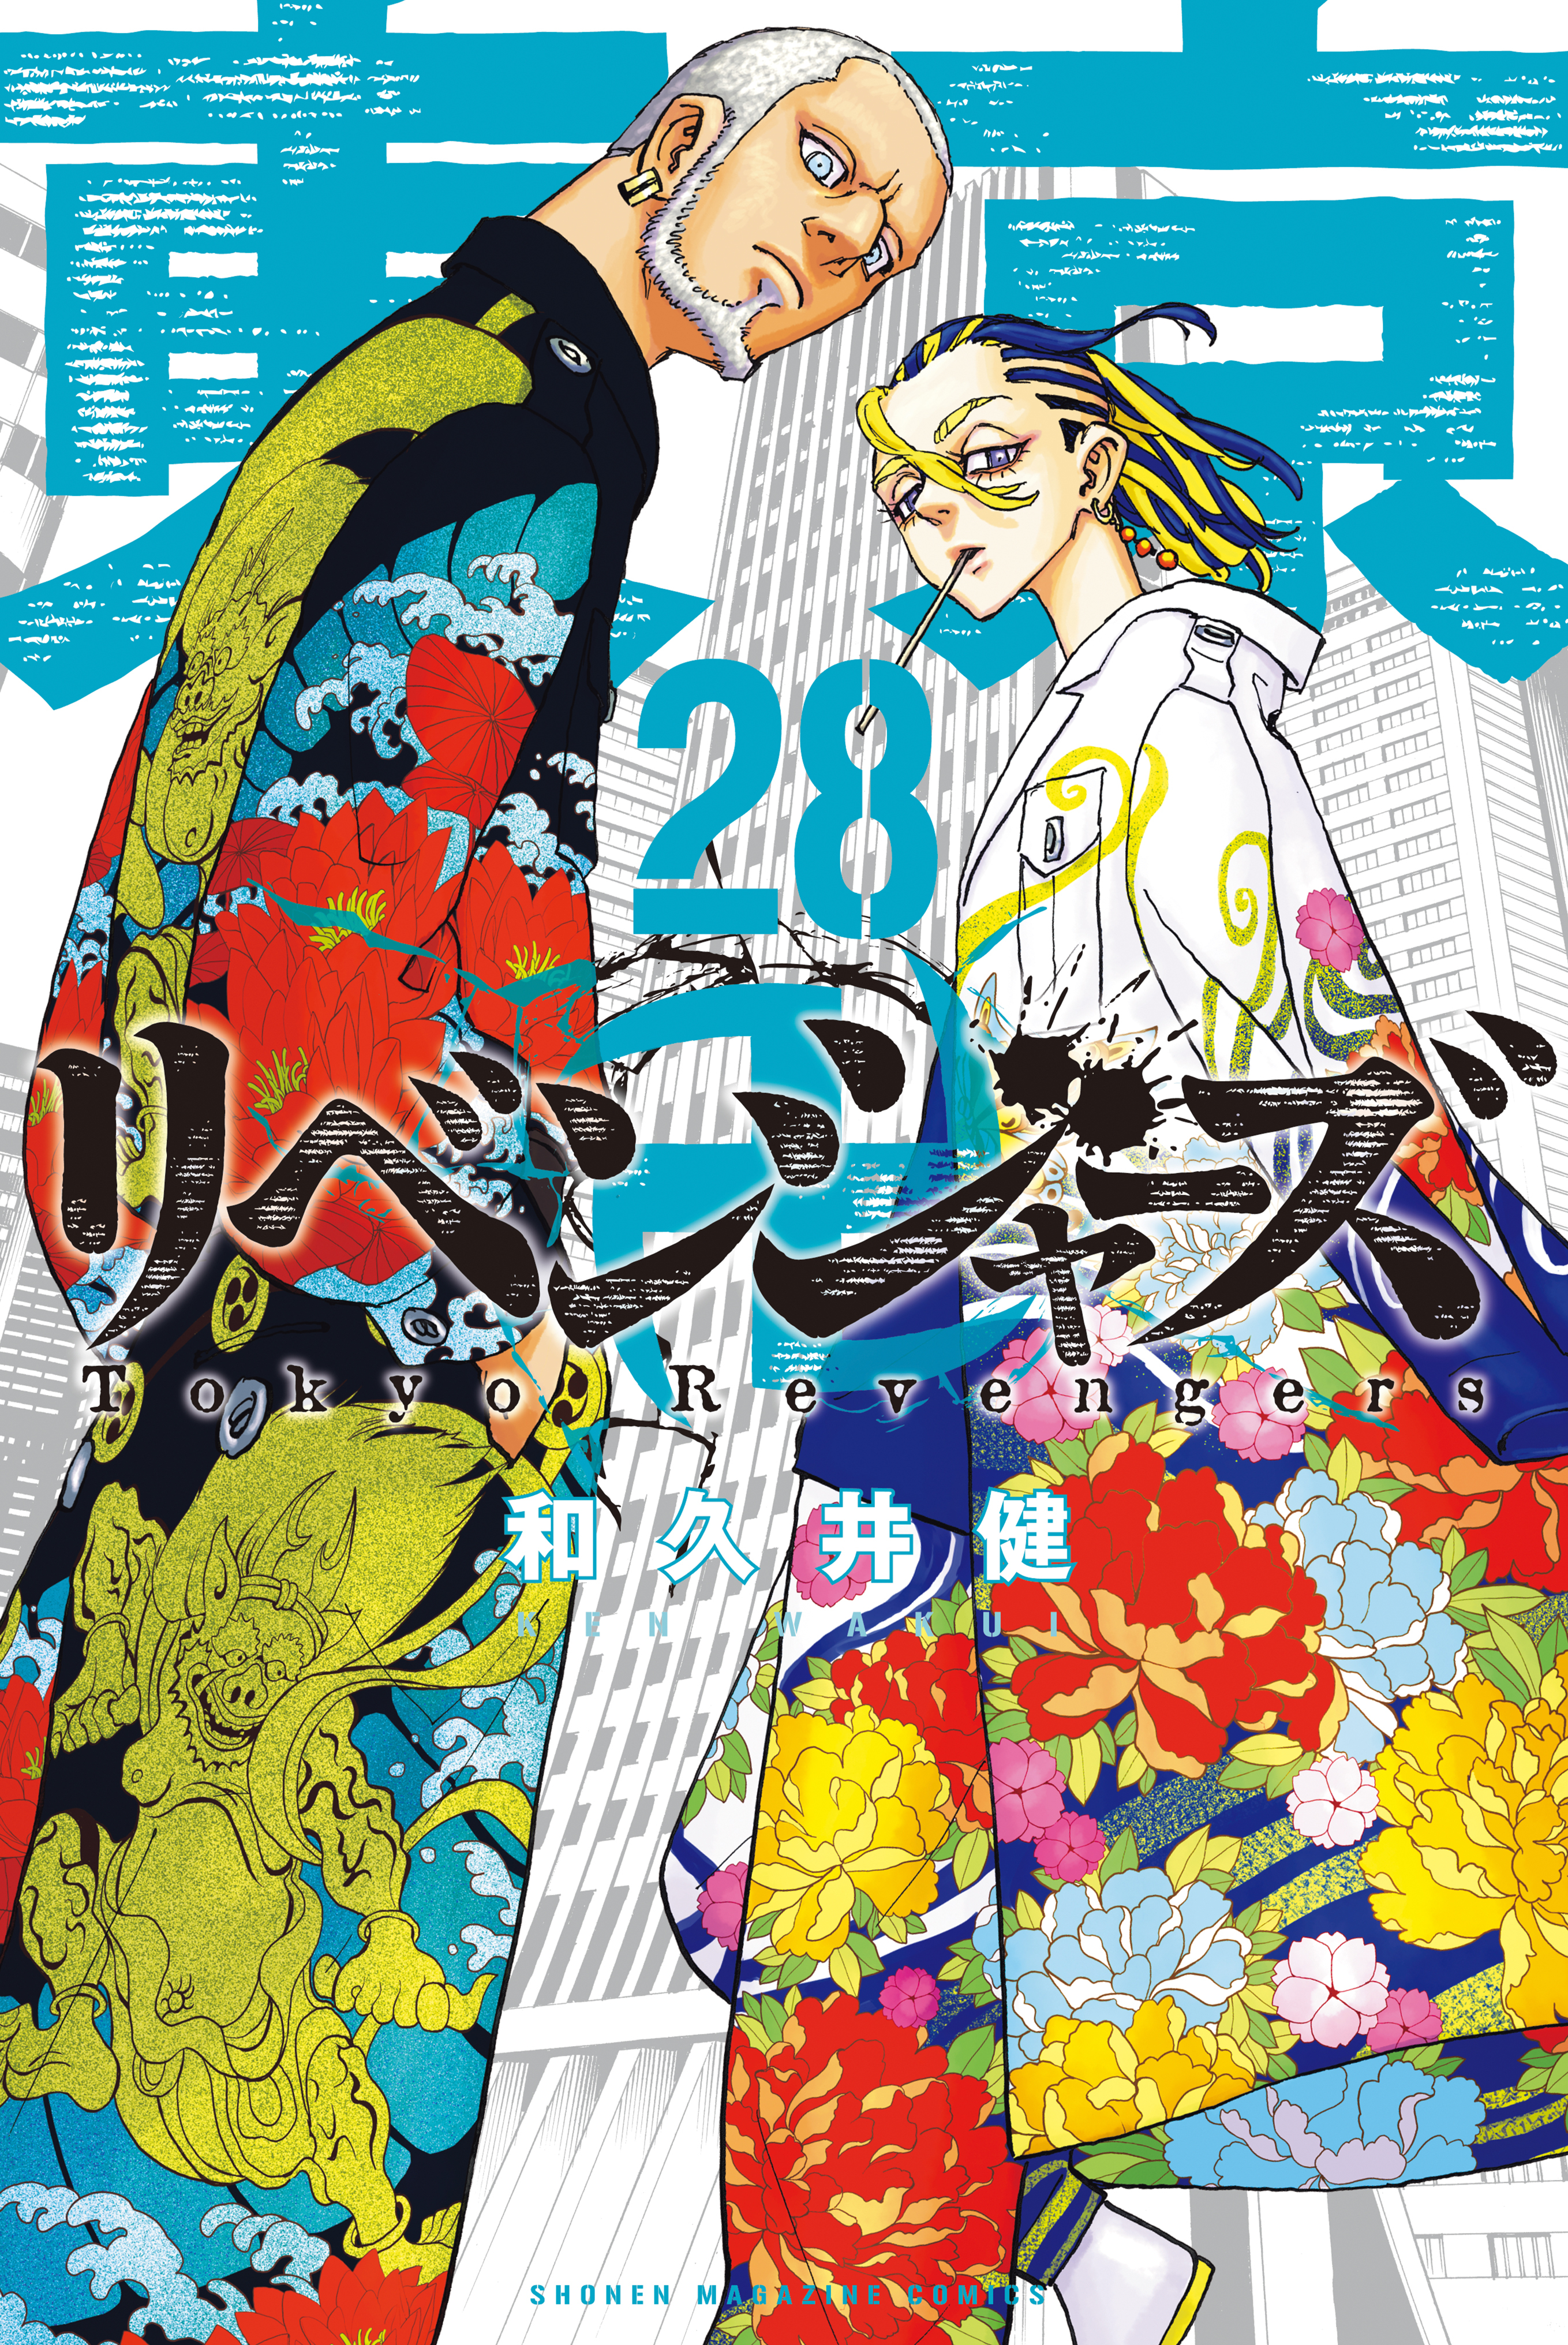 東京卍リベンジャーズ 29巻|8月17日新刊発売予定|和久井健|人気マンガ 